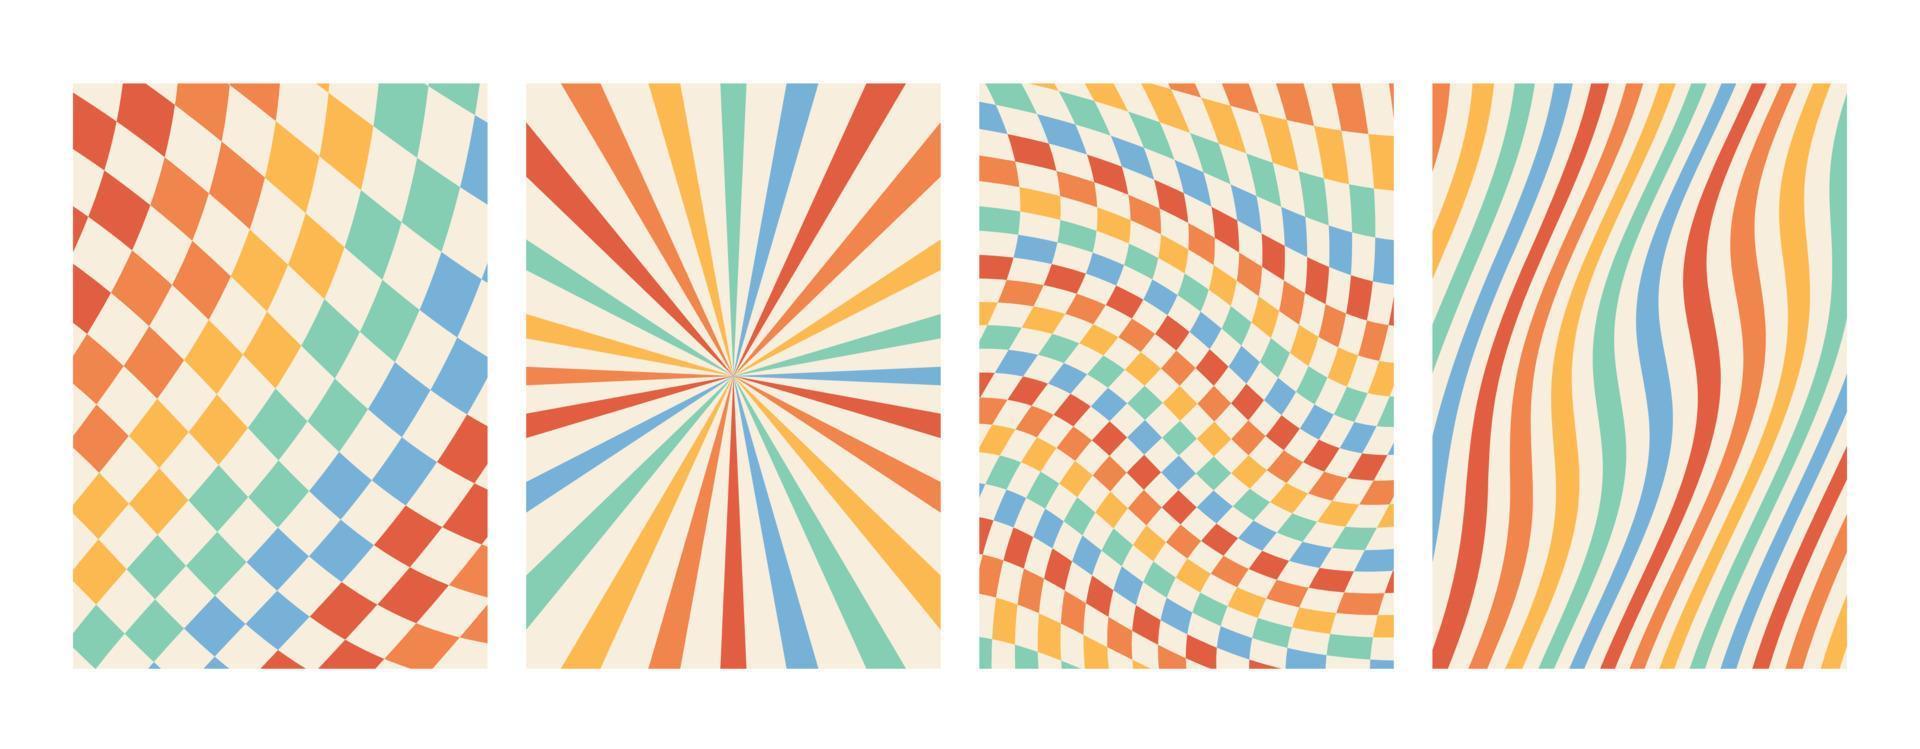 groovy regenboog achtergronden. schaakbord, rooster, golven, wervelen, ronddraaien patroon.. gedraaid en vervormd vector structuur in een modieus retro psychedelisch stijl. de esthetiek van de hippies van de jaren 70.